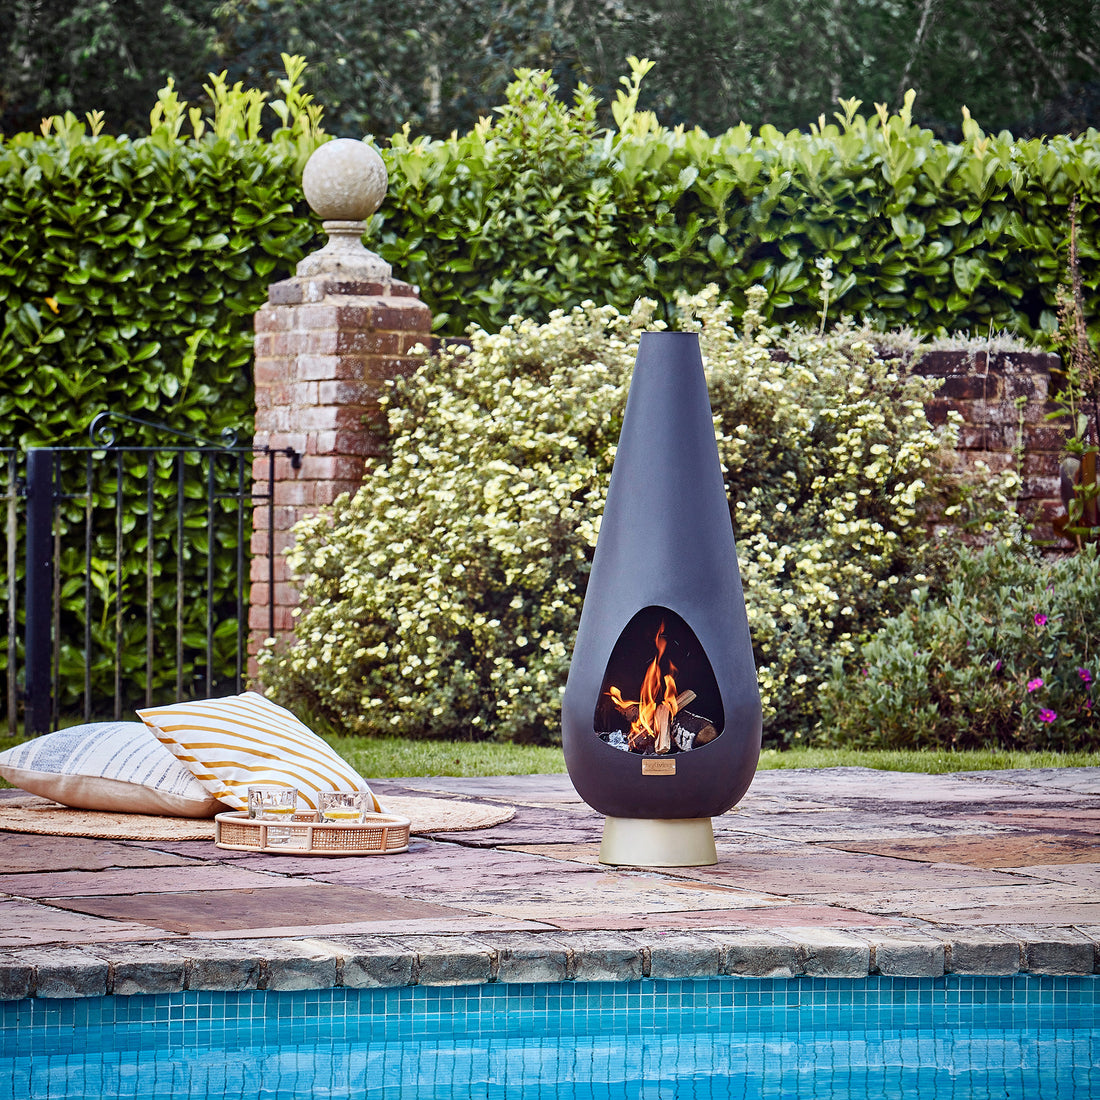 Ivyline Leo Fireplace - Premium Garden